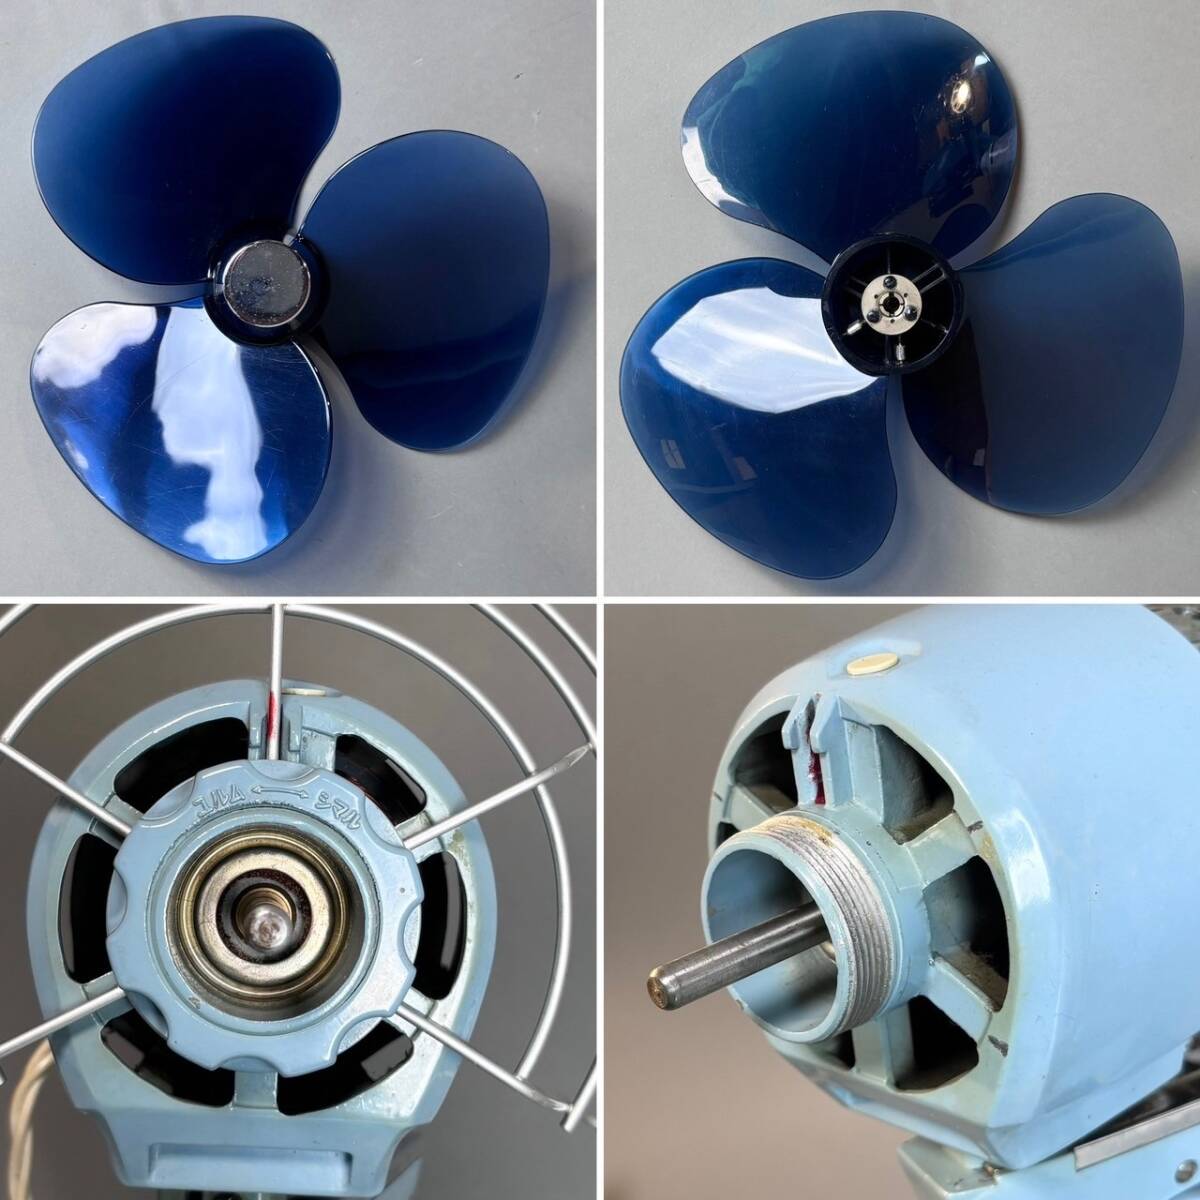 YM184 часть подтверждение рабочего состояния MITSUBISHI ELECTRIC Mitsubishi Electric вентилятор Sporty-300 Mitsubishi вентилятор 30cm настольный .3 крыльев морской голубой ( осмотр ) Showa Retro бытовая техника 